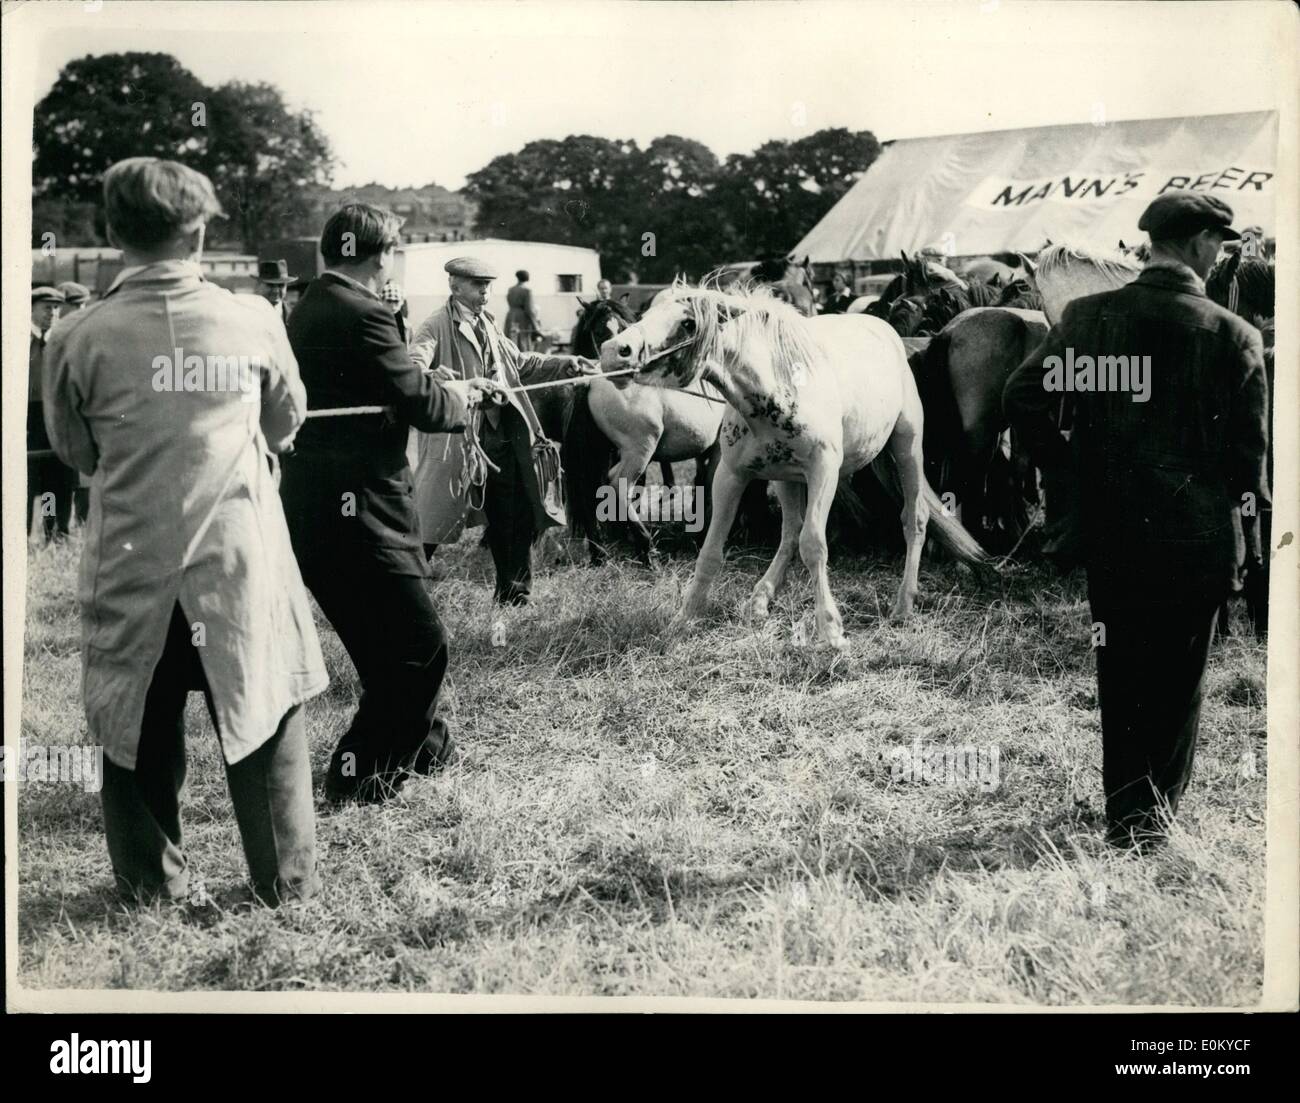 Sett. 09, 1952 - Problemi un pony - a Barnet Fiera Cavalli: il famoso Barnet Horse Fair aperta oggi- e questo Pony Welsh ha dato un posto di difficoltà quando viene portato fuori in vendita. Foto Stock